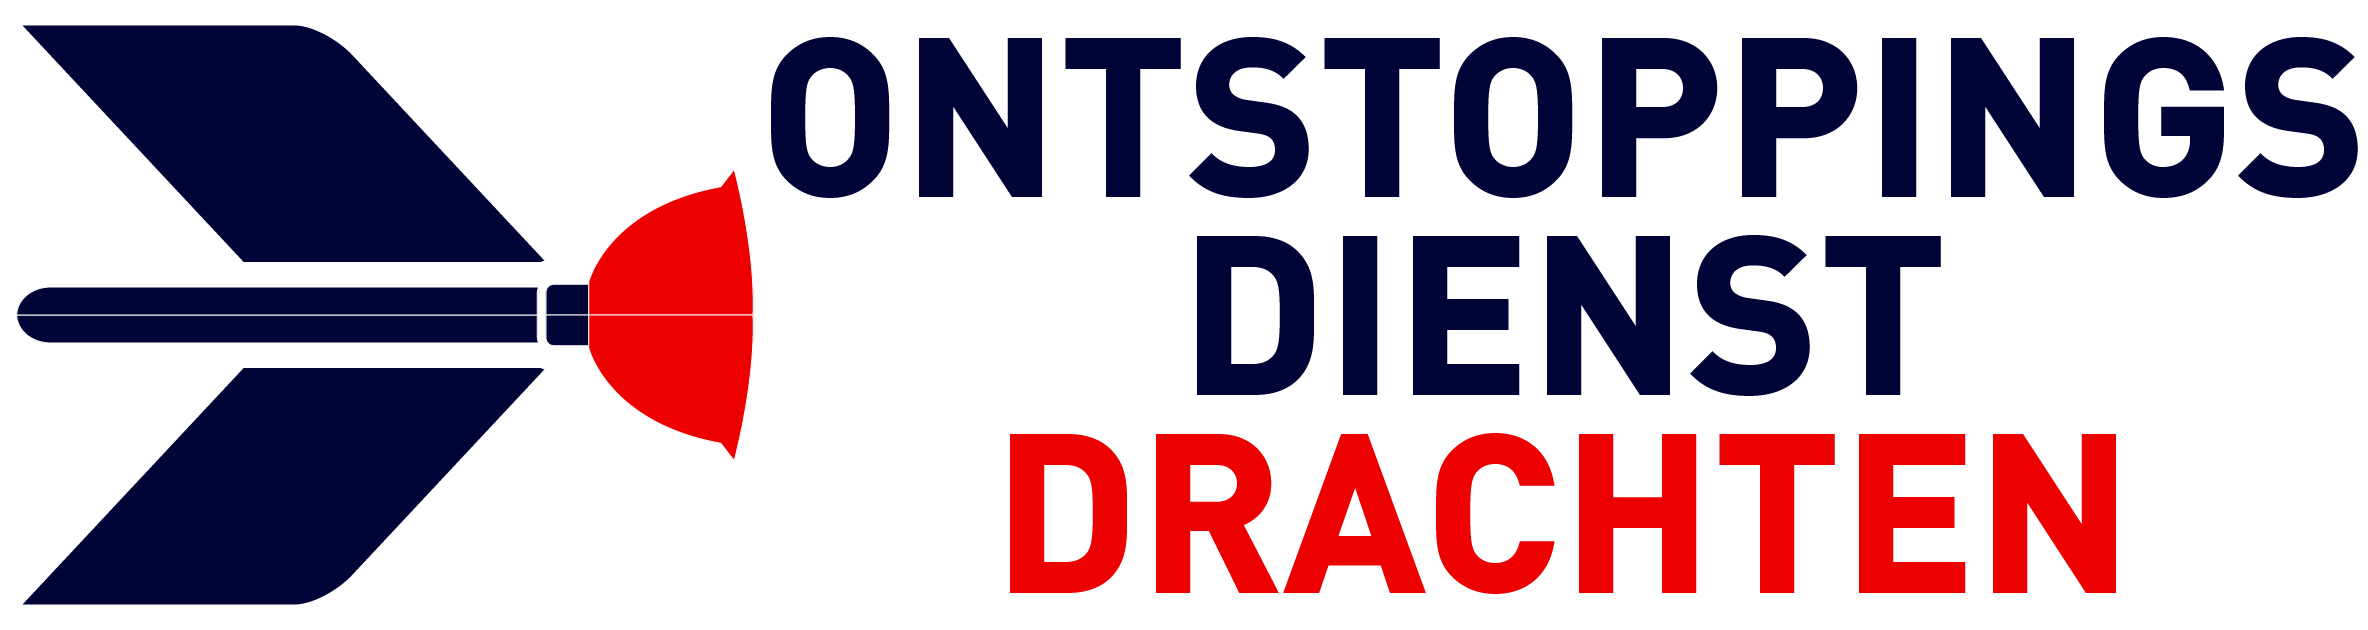 Ontstoppingsdienst Drachten logo